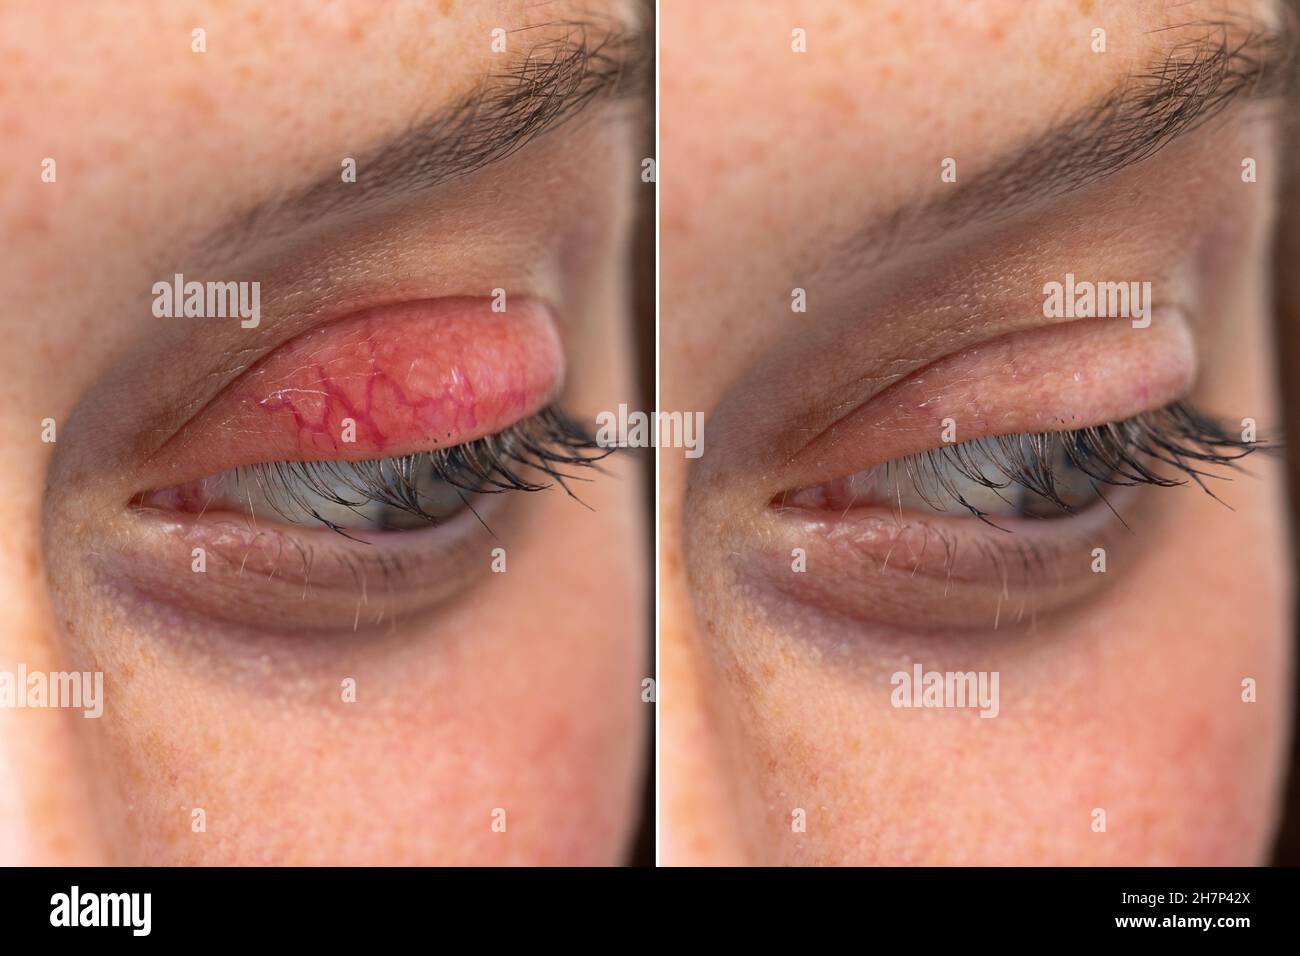 Chalazion de la paupière supérieure de l'œil humain avant et après la  comparaison de la blépharite côte à côte Photo Stock - Alamy